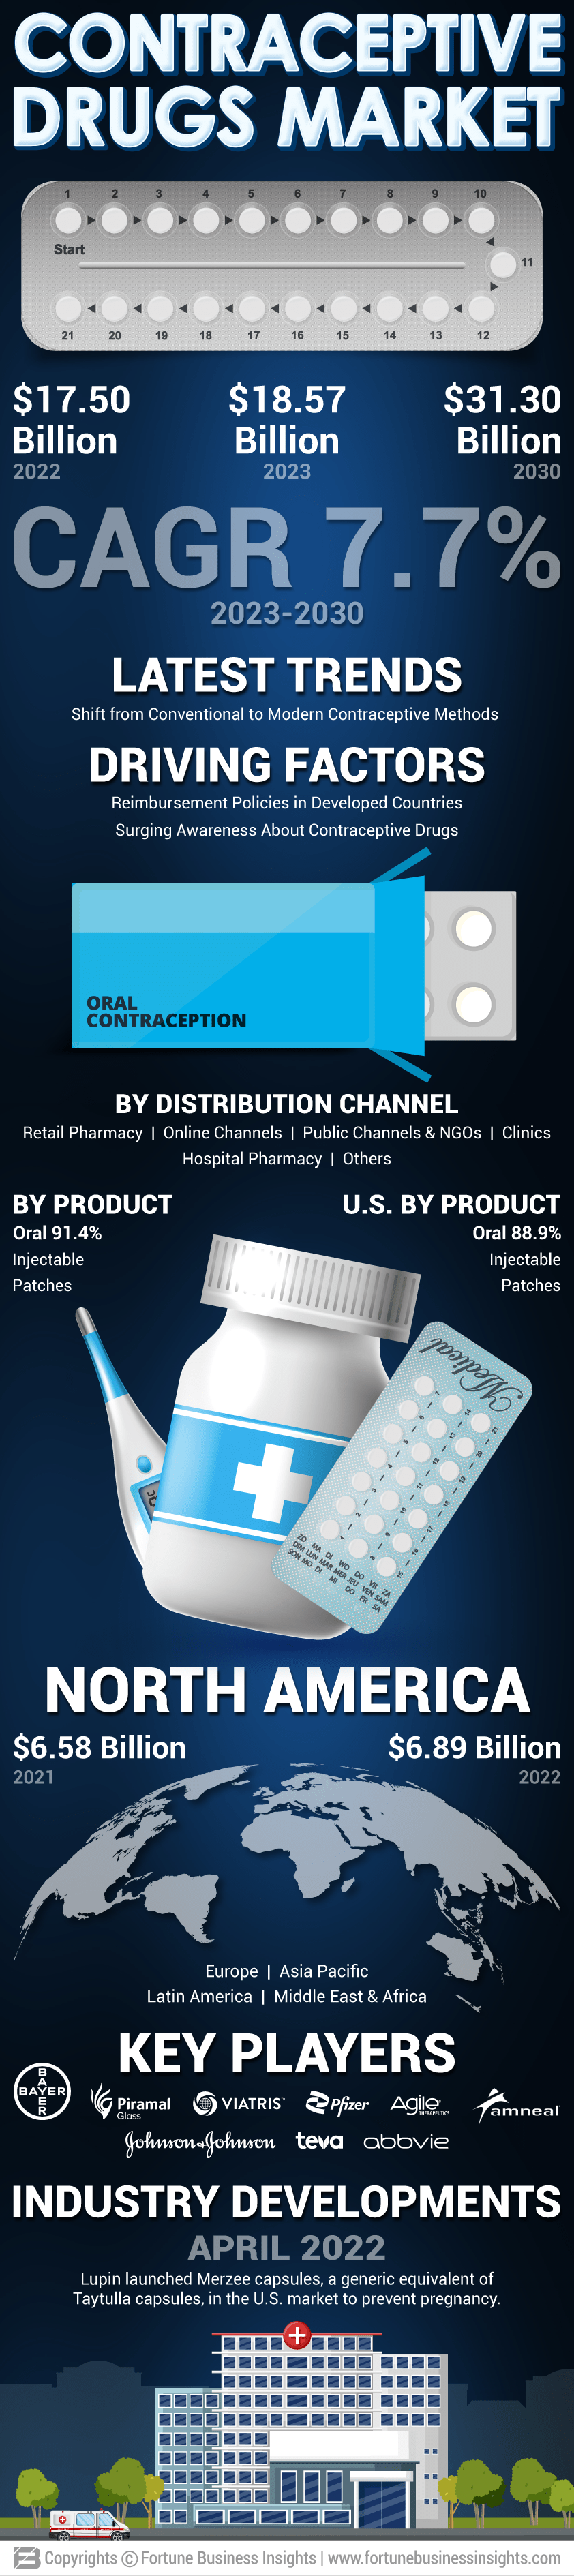 Contraceptive Drugs Market